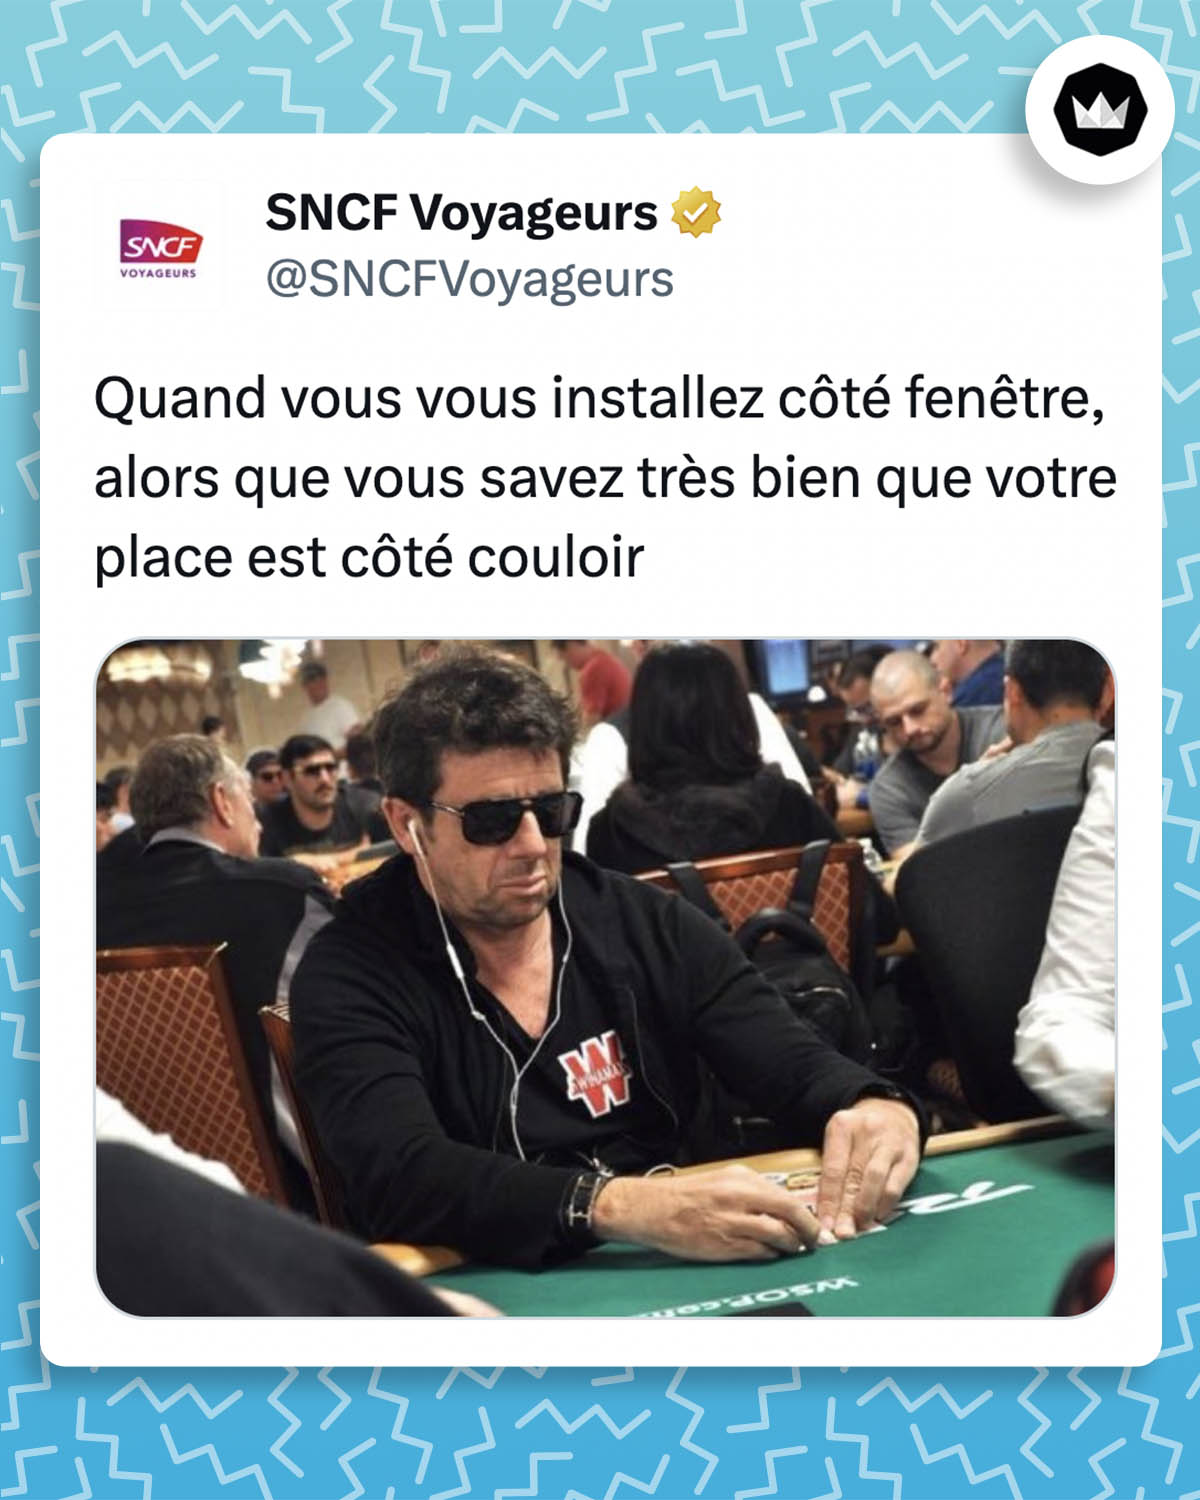 tweet de @SNCFVoyageurs : "Quand vous vous installez côté fenêtre, alors que vous savez très bien que votre place est côté couloir" avec le meme de Patrick Bruel jouant au poker